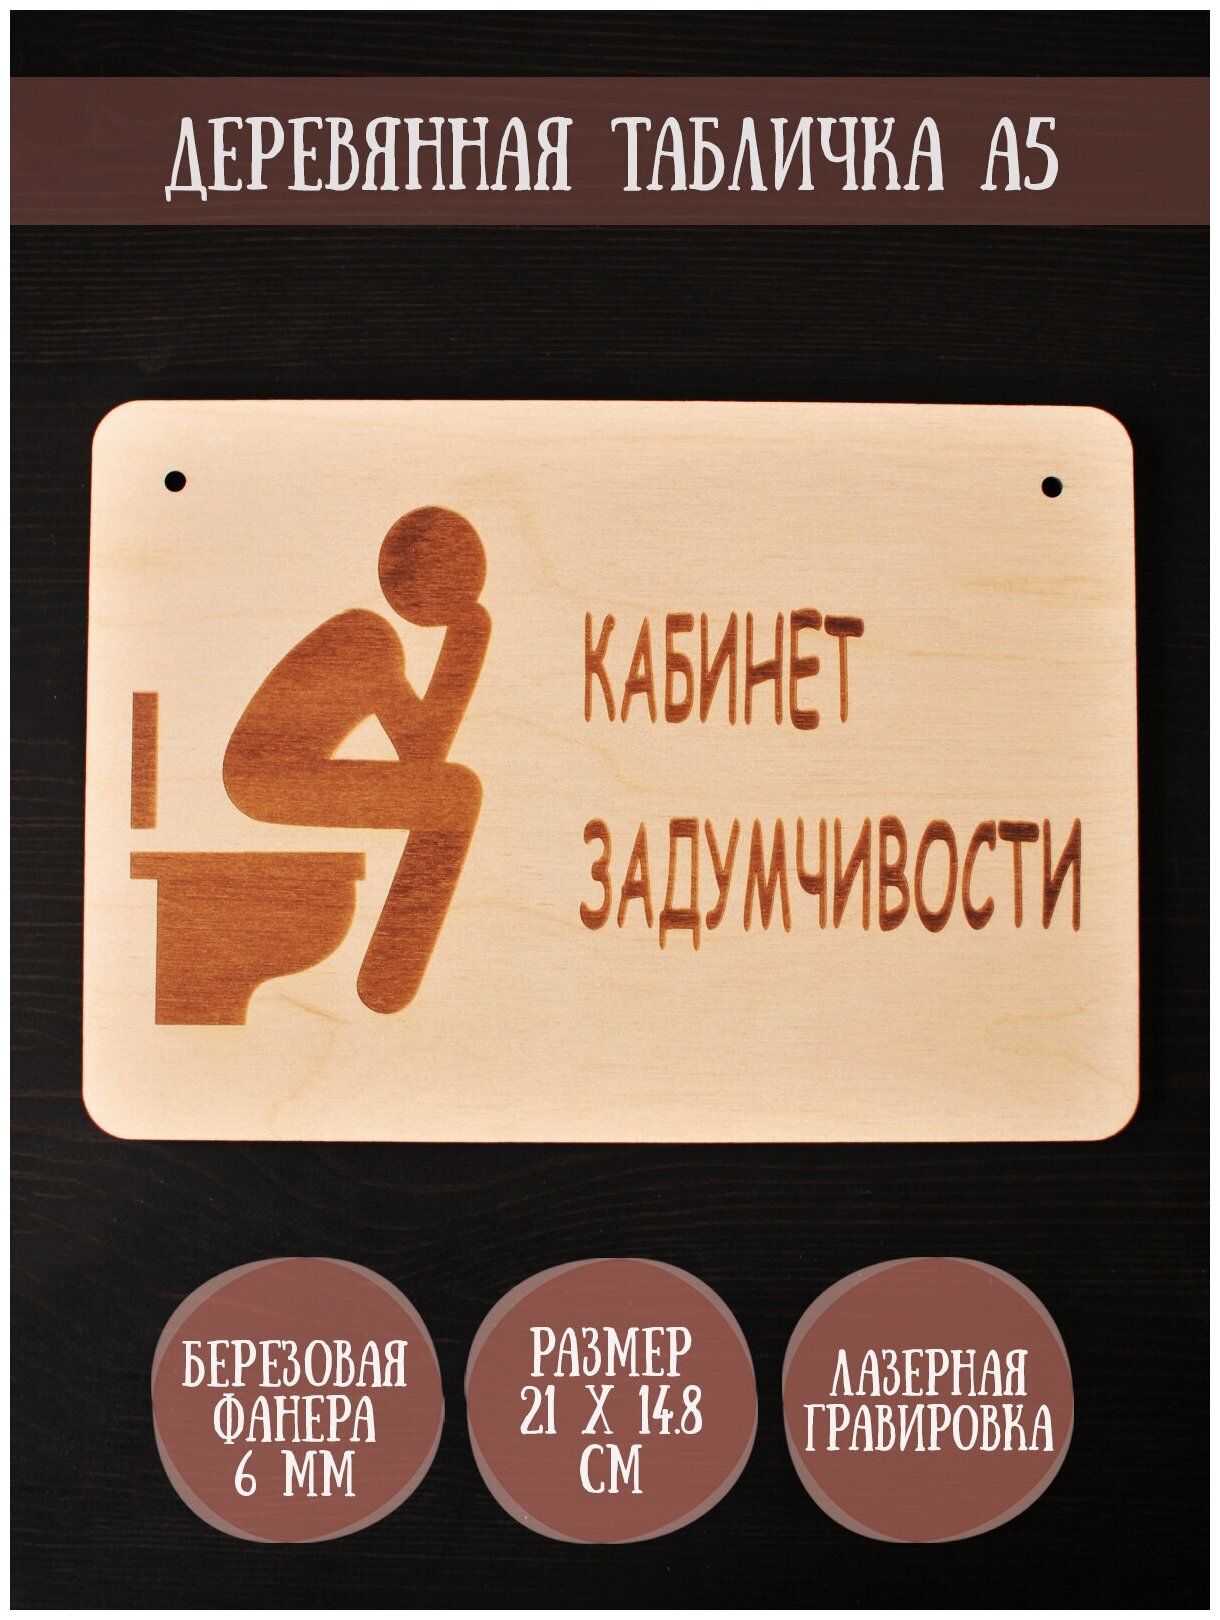 Табличка в туалет Riform "Кабинет задумчивости" гравировка формат А5 (21 х 148) березовая фанера 6